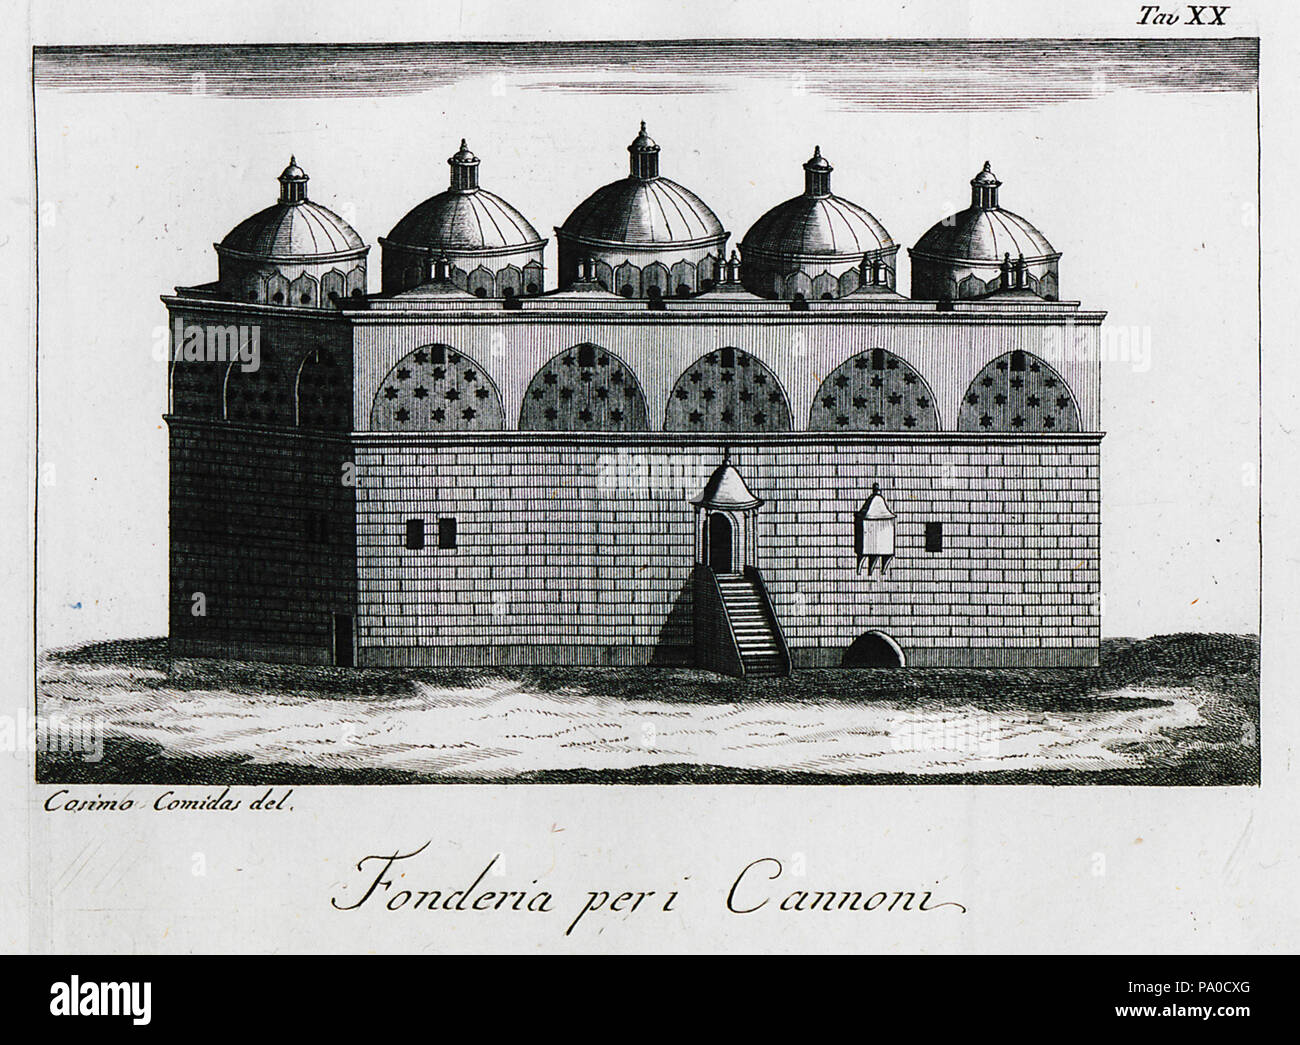 660 Fonderia per i Canoni - Comidas Cosimo - 1794 Stock Photo